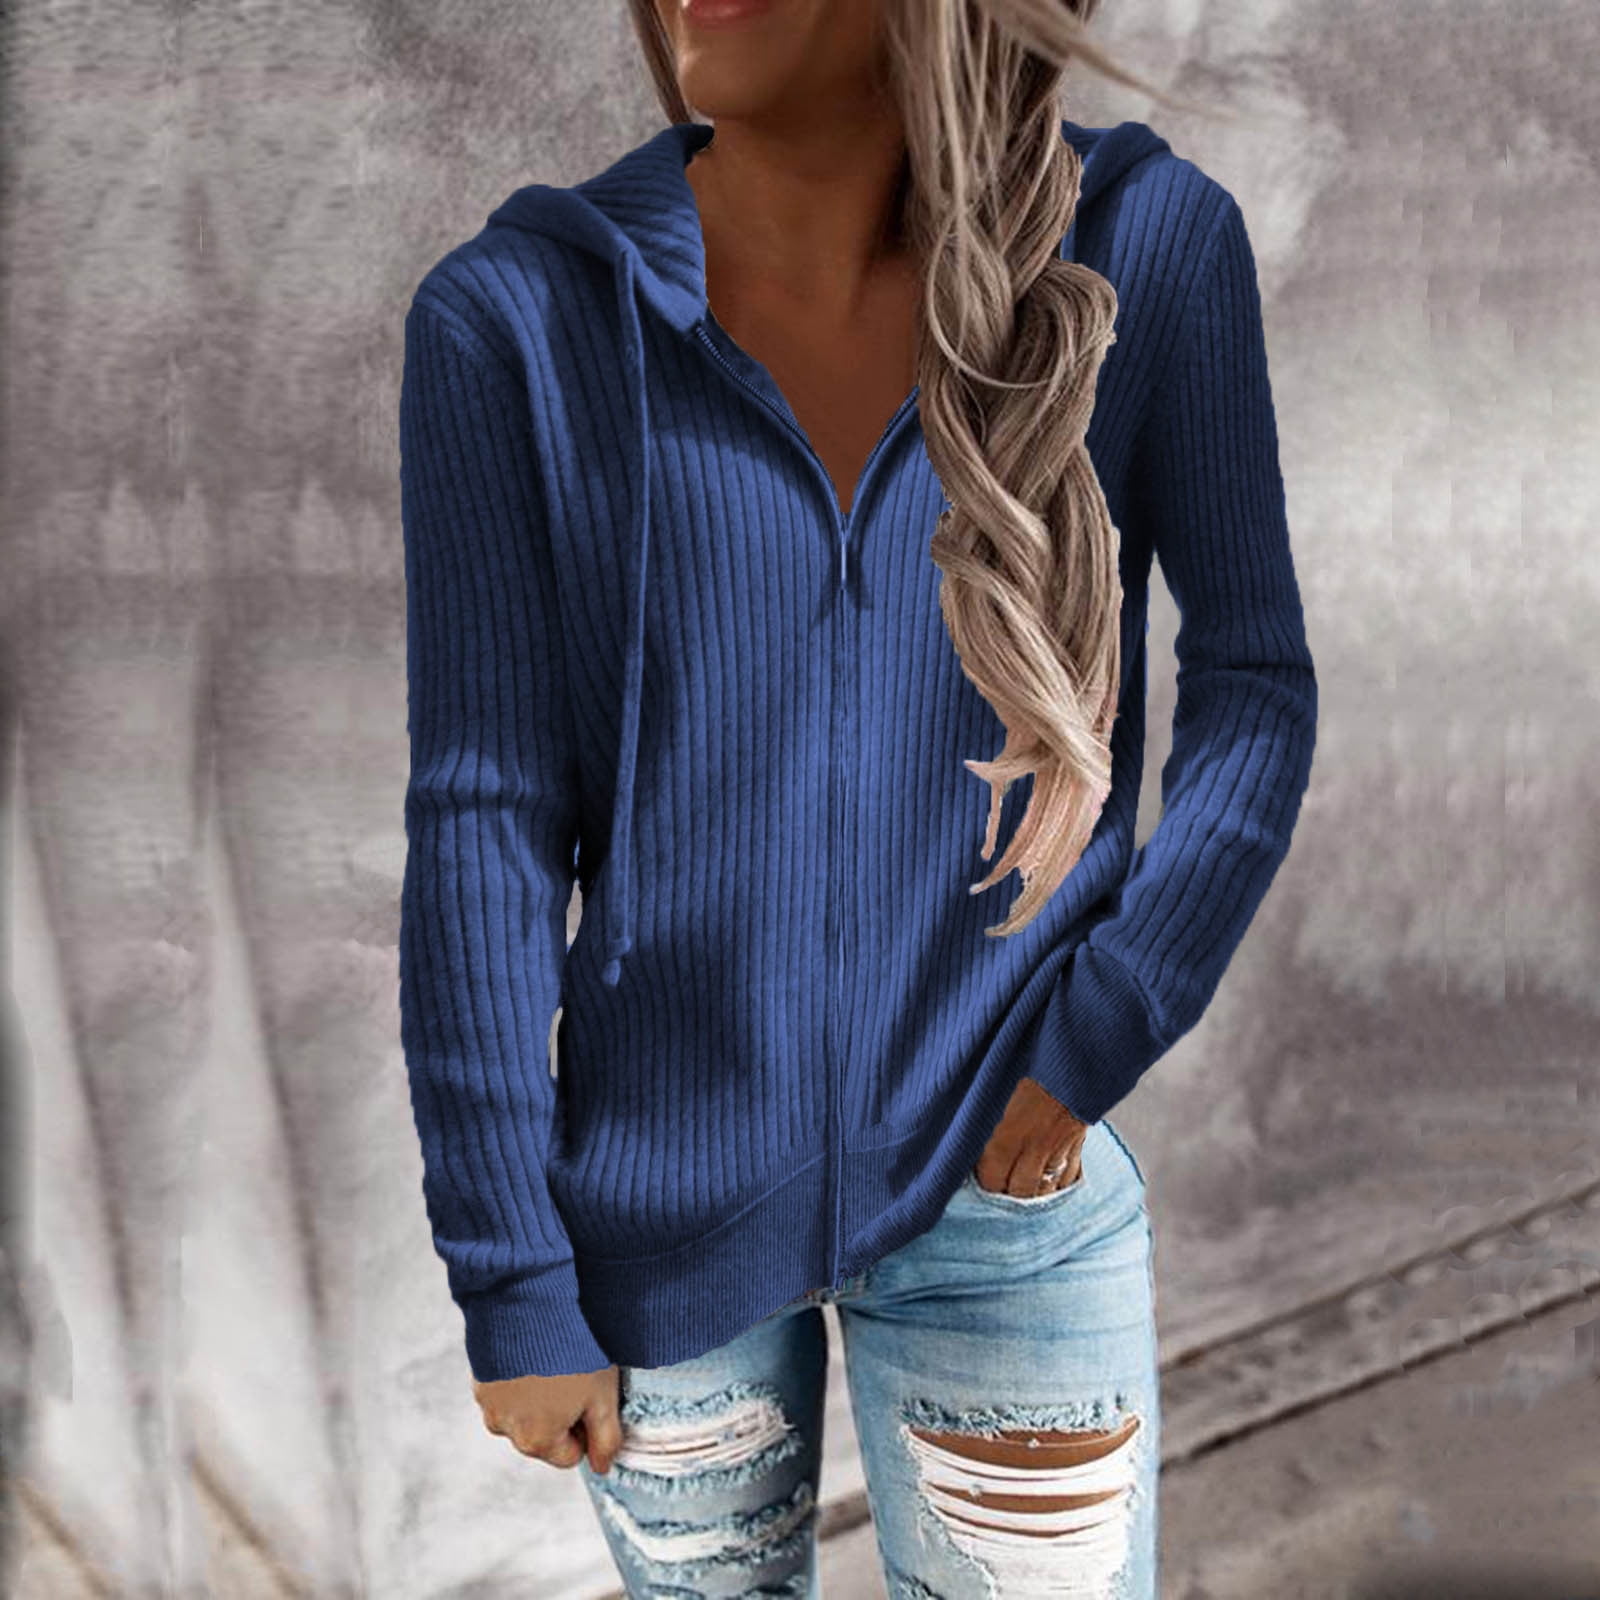 Tejiojio Fall Clothes Discounted Women Casual Knit Button Long